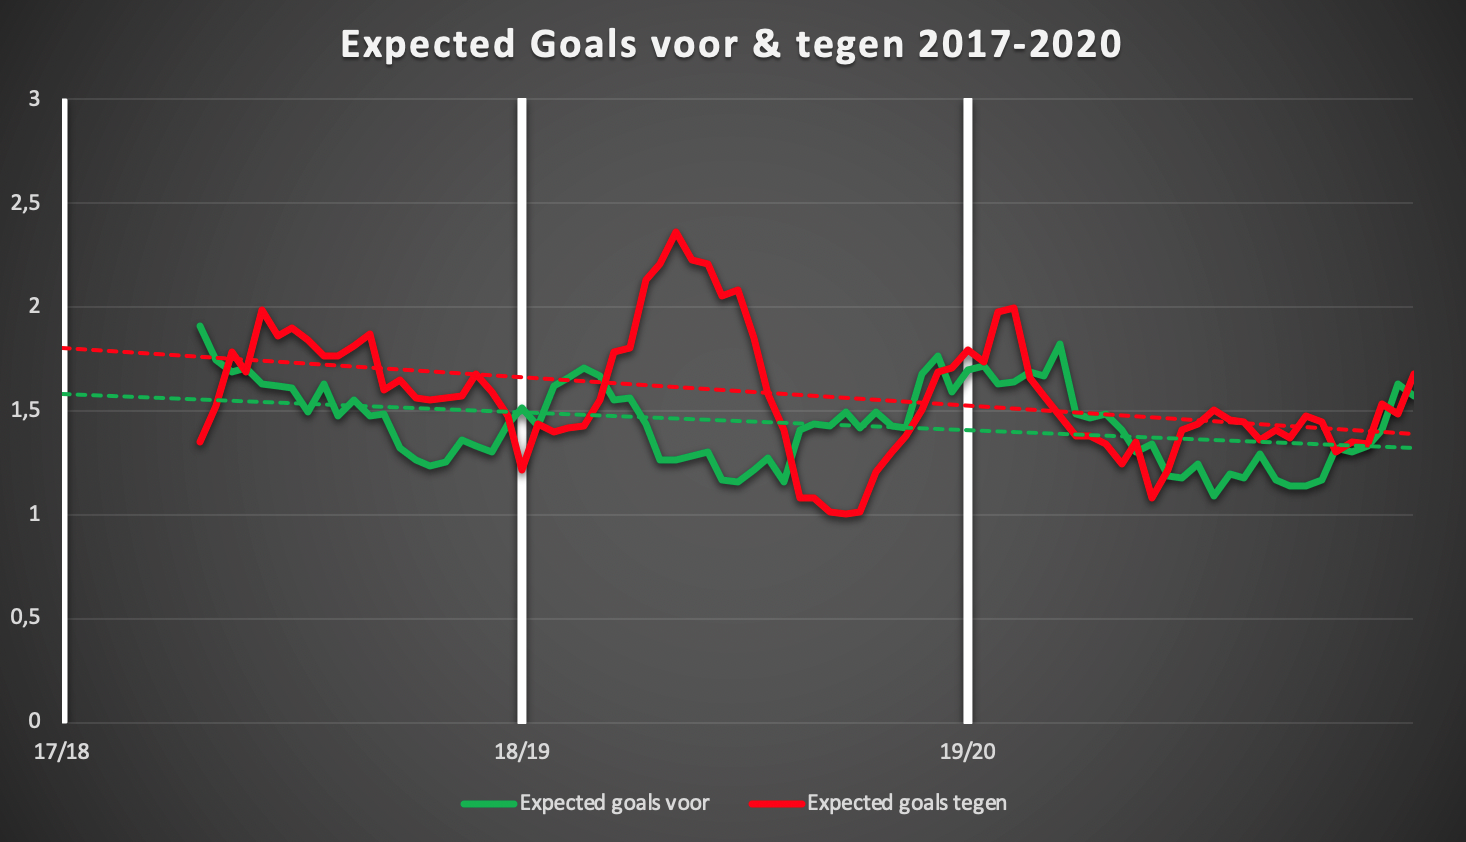 Rollend gemiddelde (10 wedstrijden) van de gecreëerde kansen voor en tegen van Zulte Waregem de afgelopen 3 seizoenen in de reguliere competitie (dus geen play-offs).